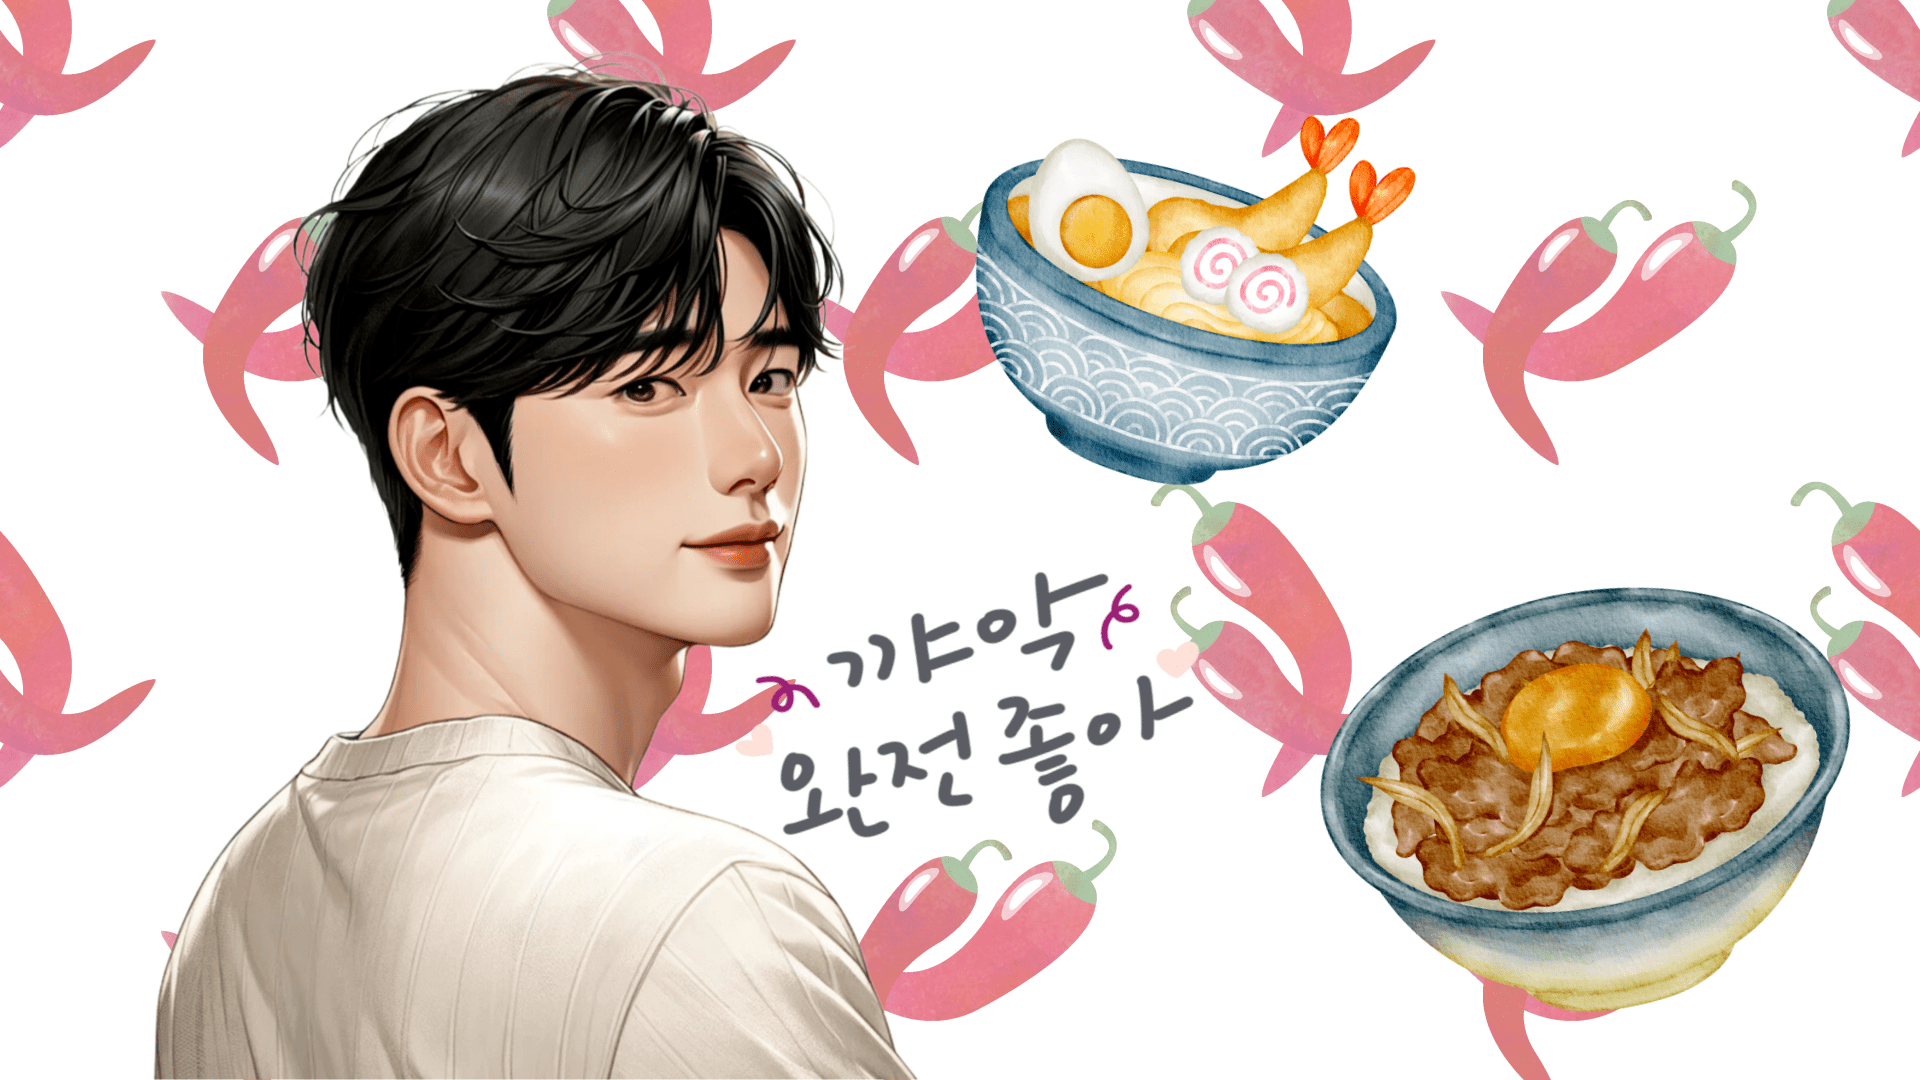 【日韓夫婦ライター直伝】韓国人男性ウケする手料理のヒミツ